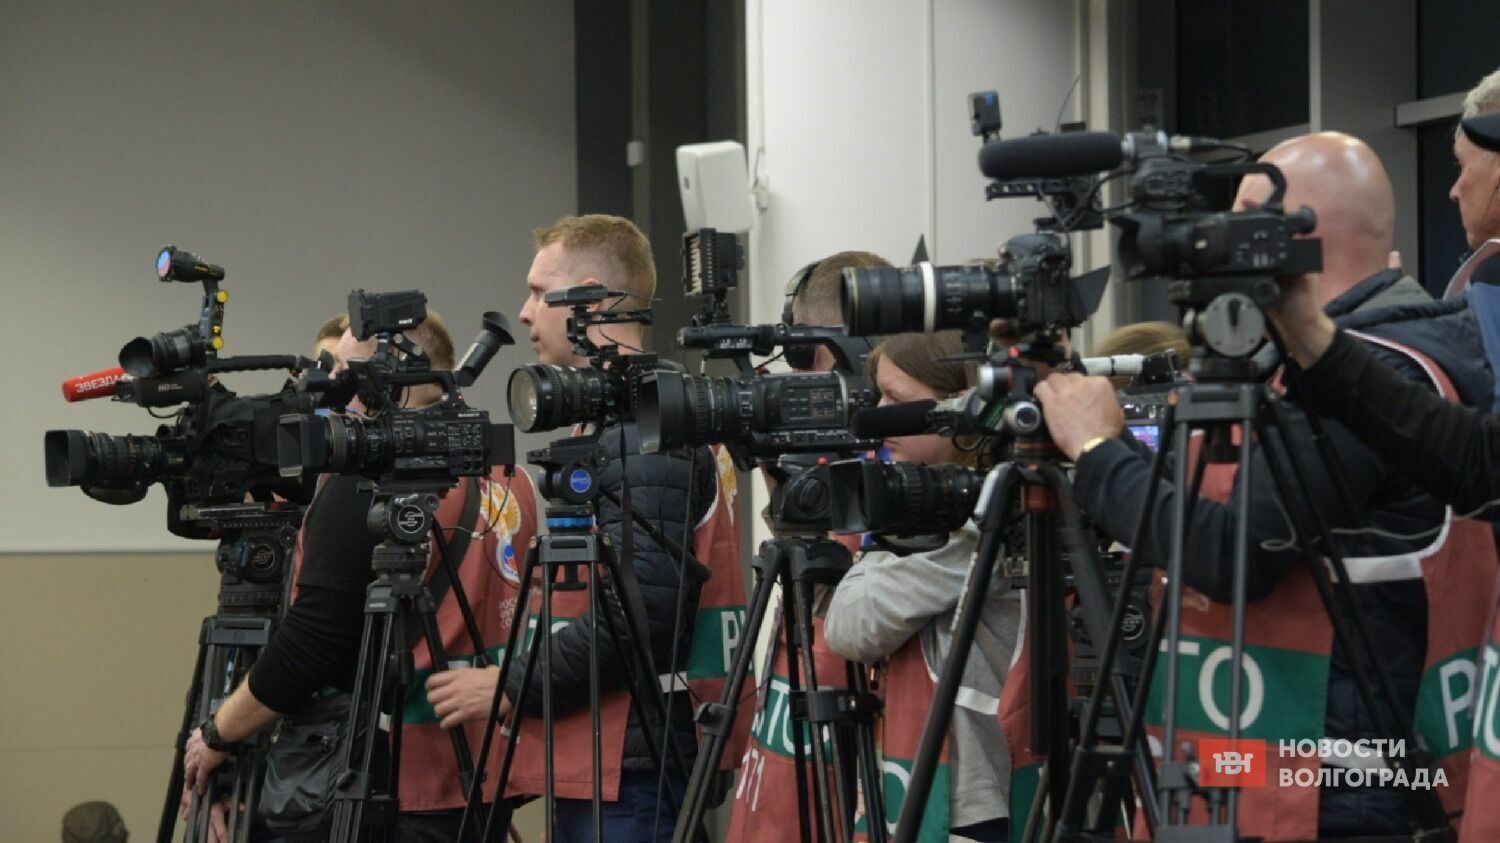 Пресс-конференция за 2 часа до начала ретро-матча «Победа» вызвала ажиотажный интерес журналистов.